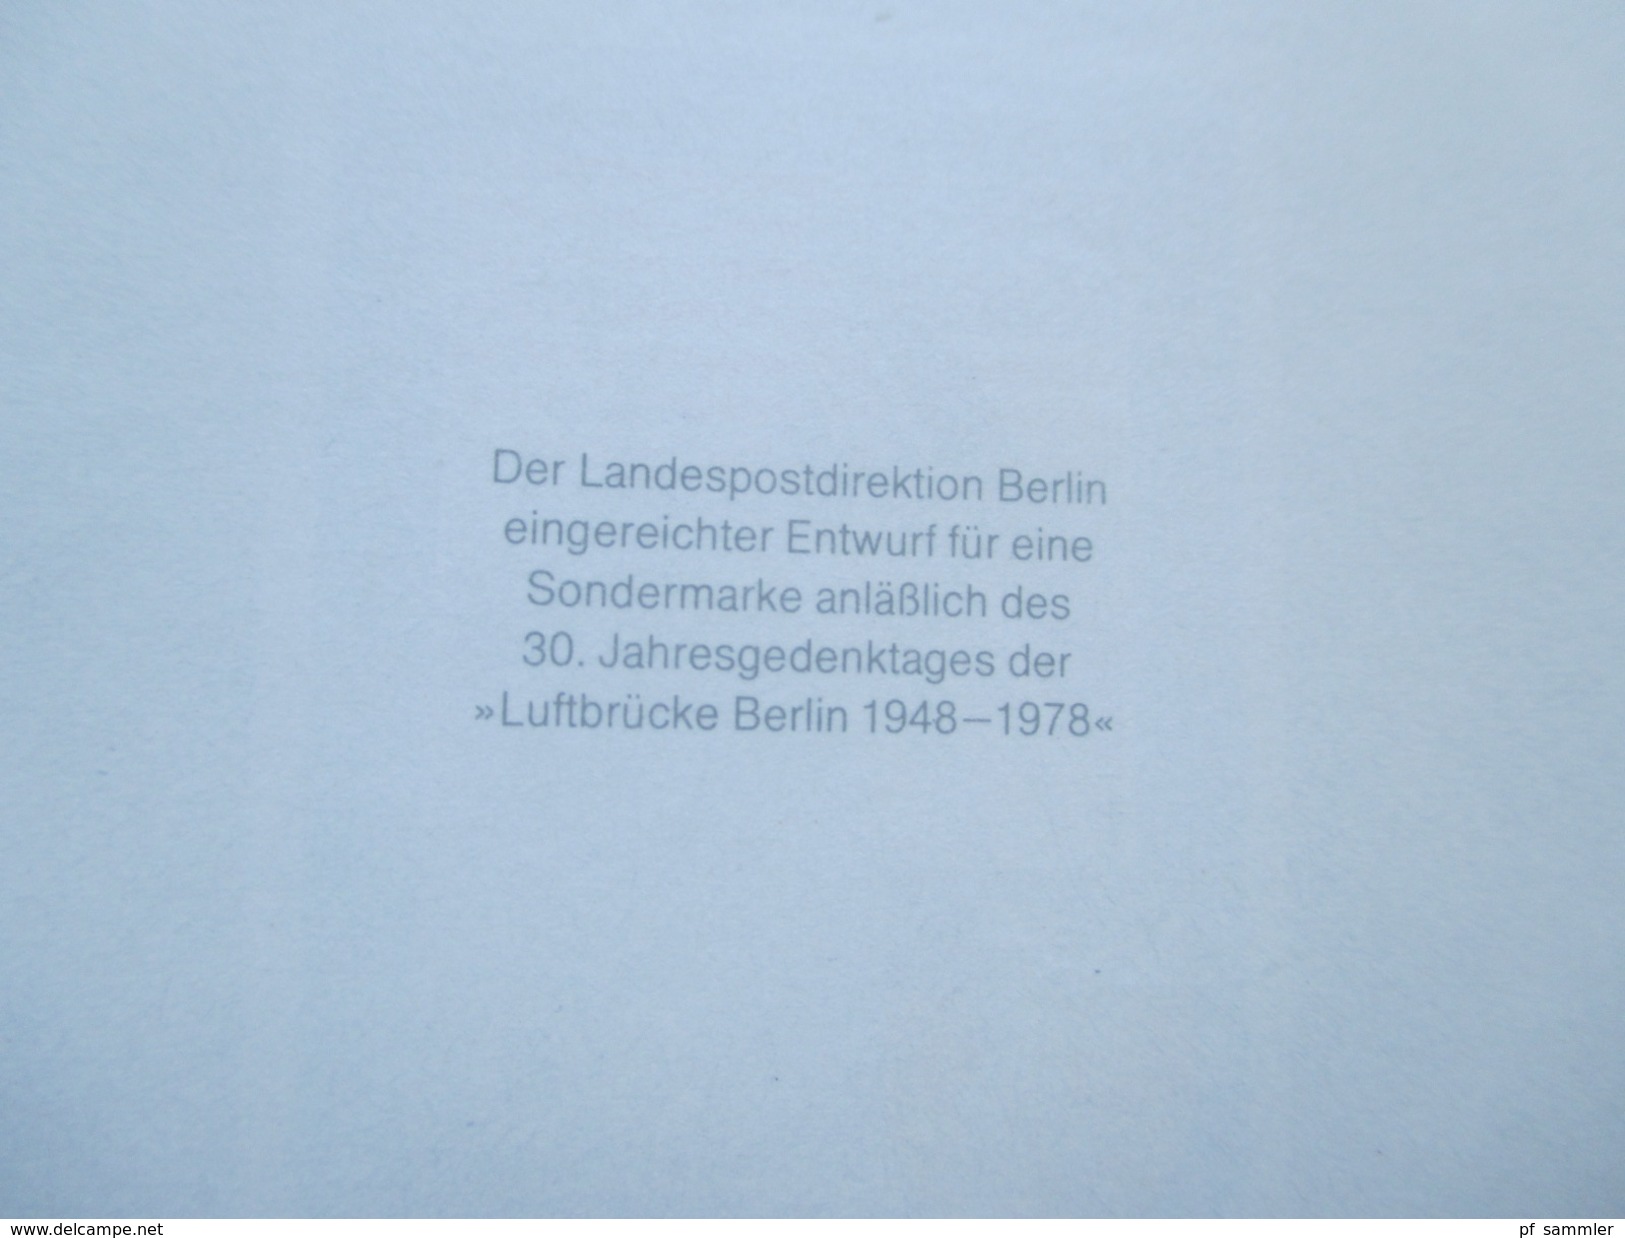 Berlin Sonderdrucke / Entwürfe Luftpostmarkenserie / Berlin 1972 / Bephila 1975 insgesamt 30 Stück! Hoher Wert!!